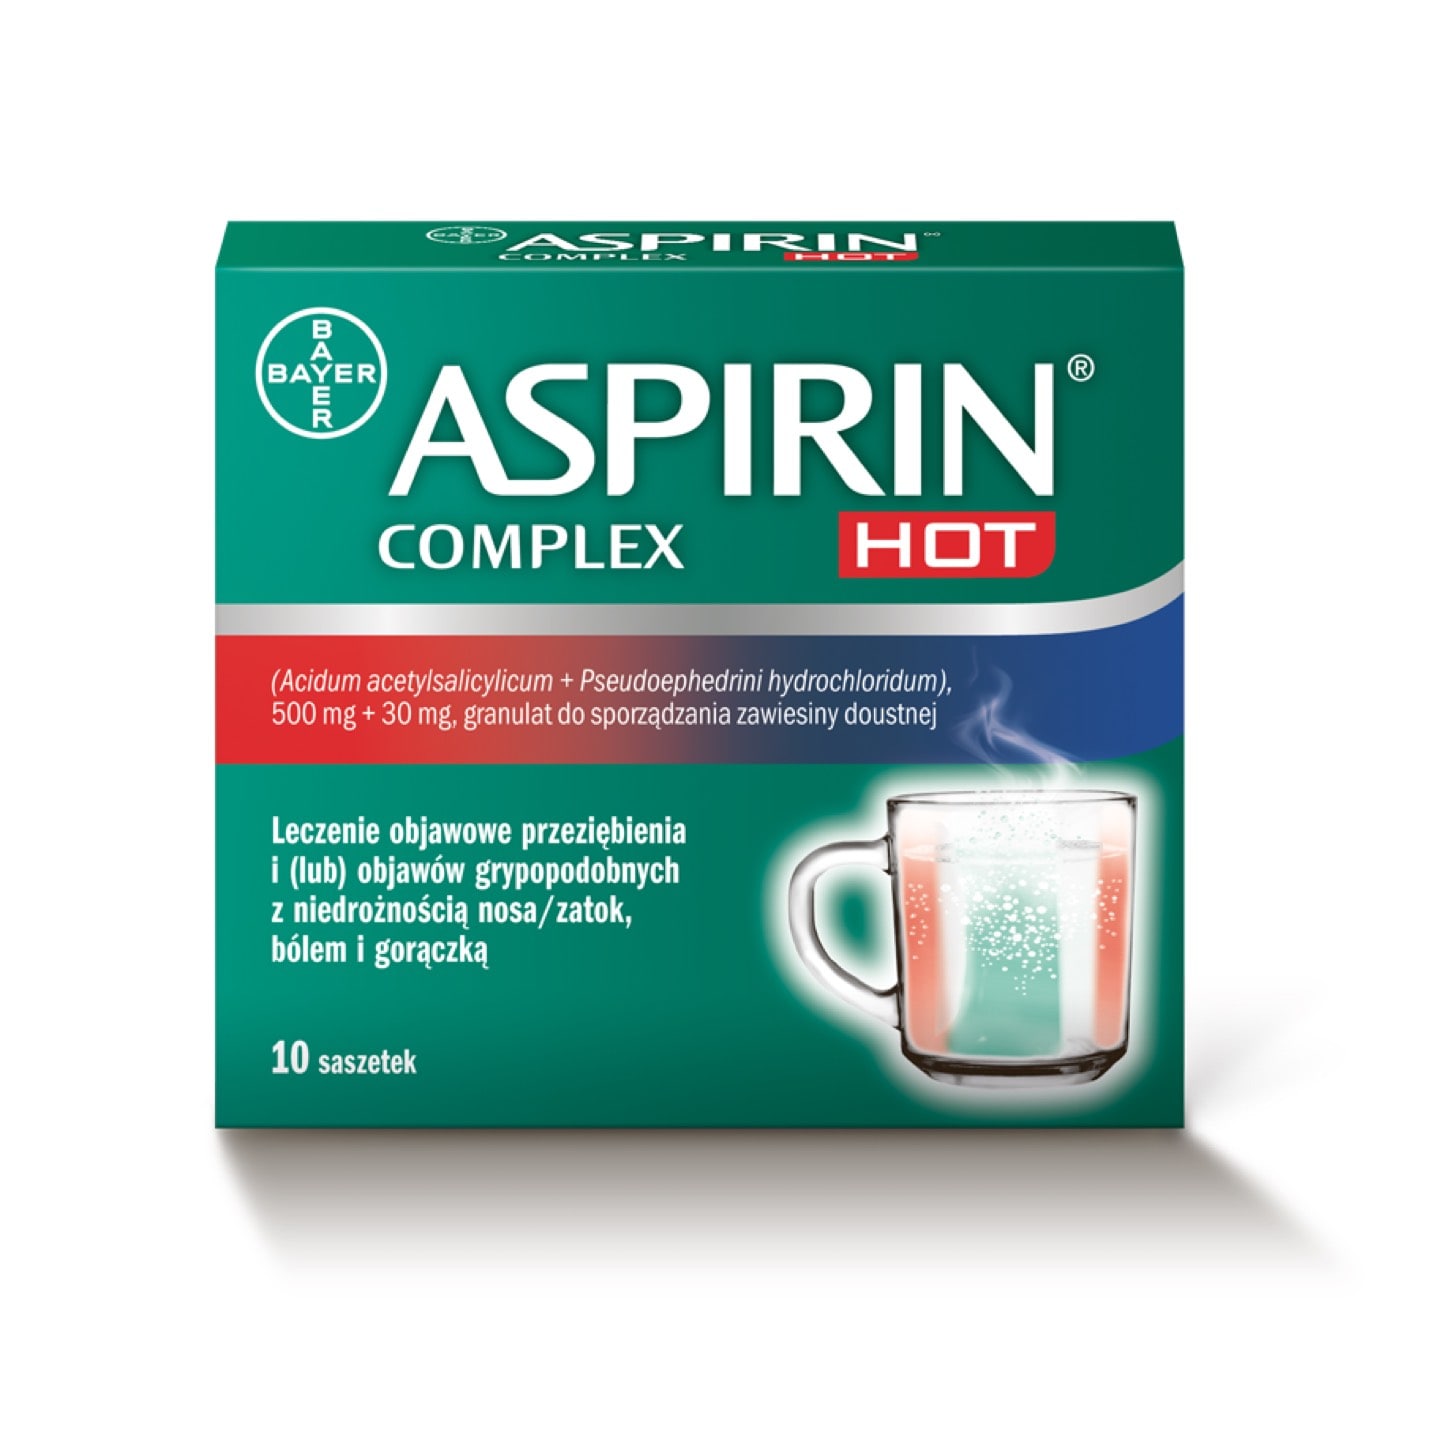  Aspirin® Complex Hot